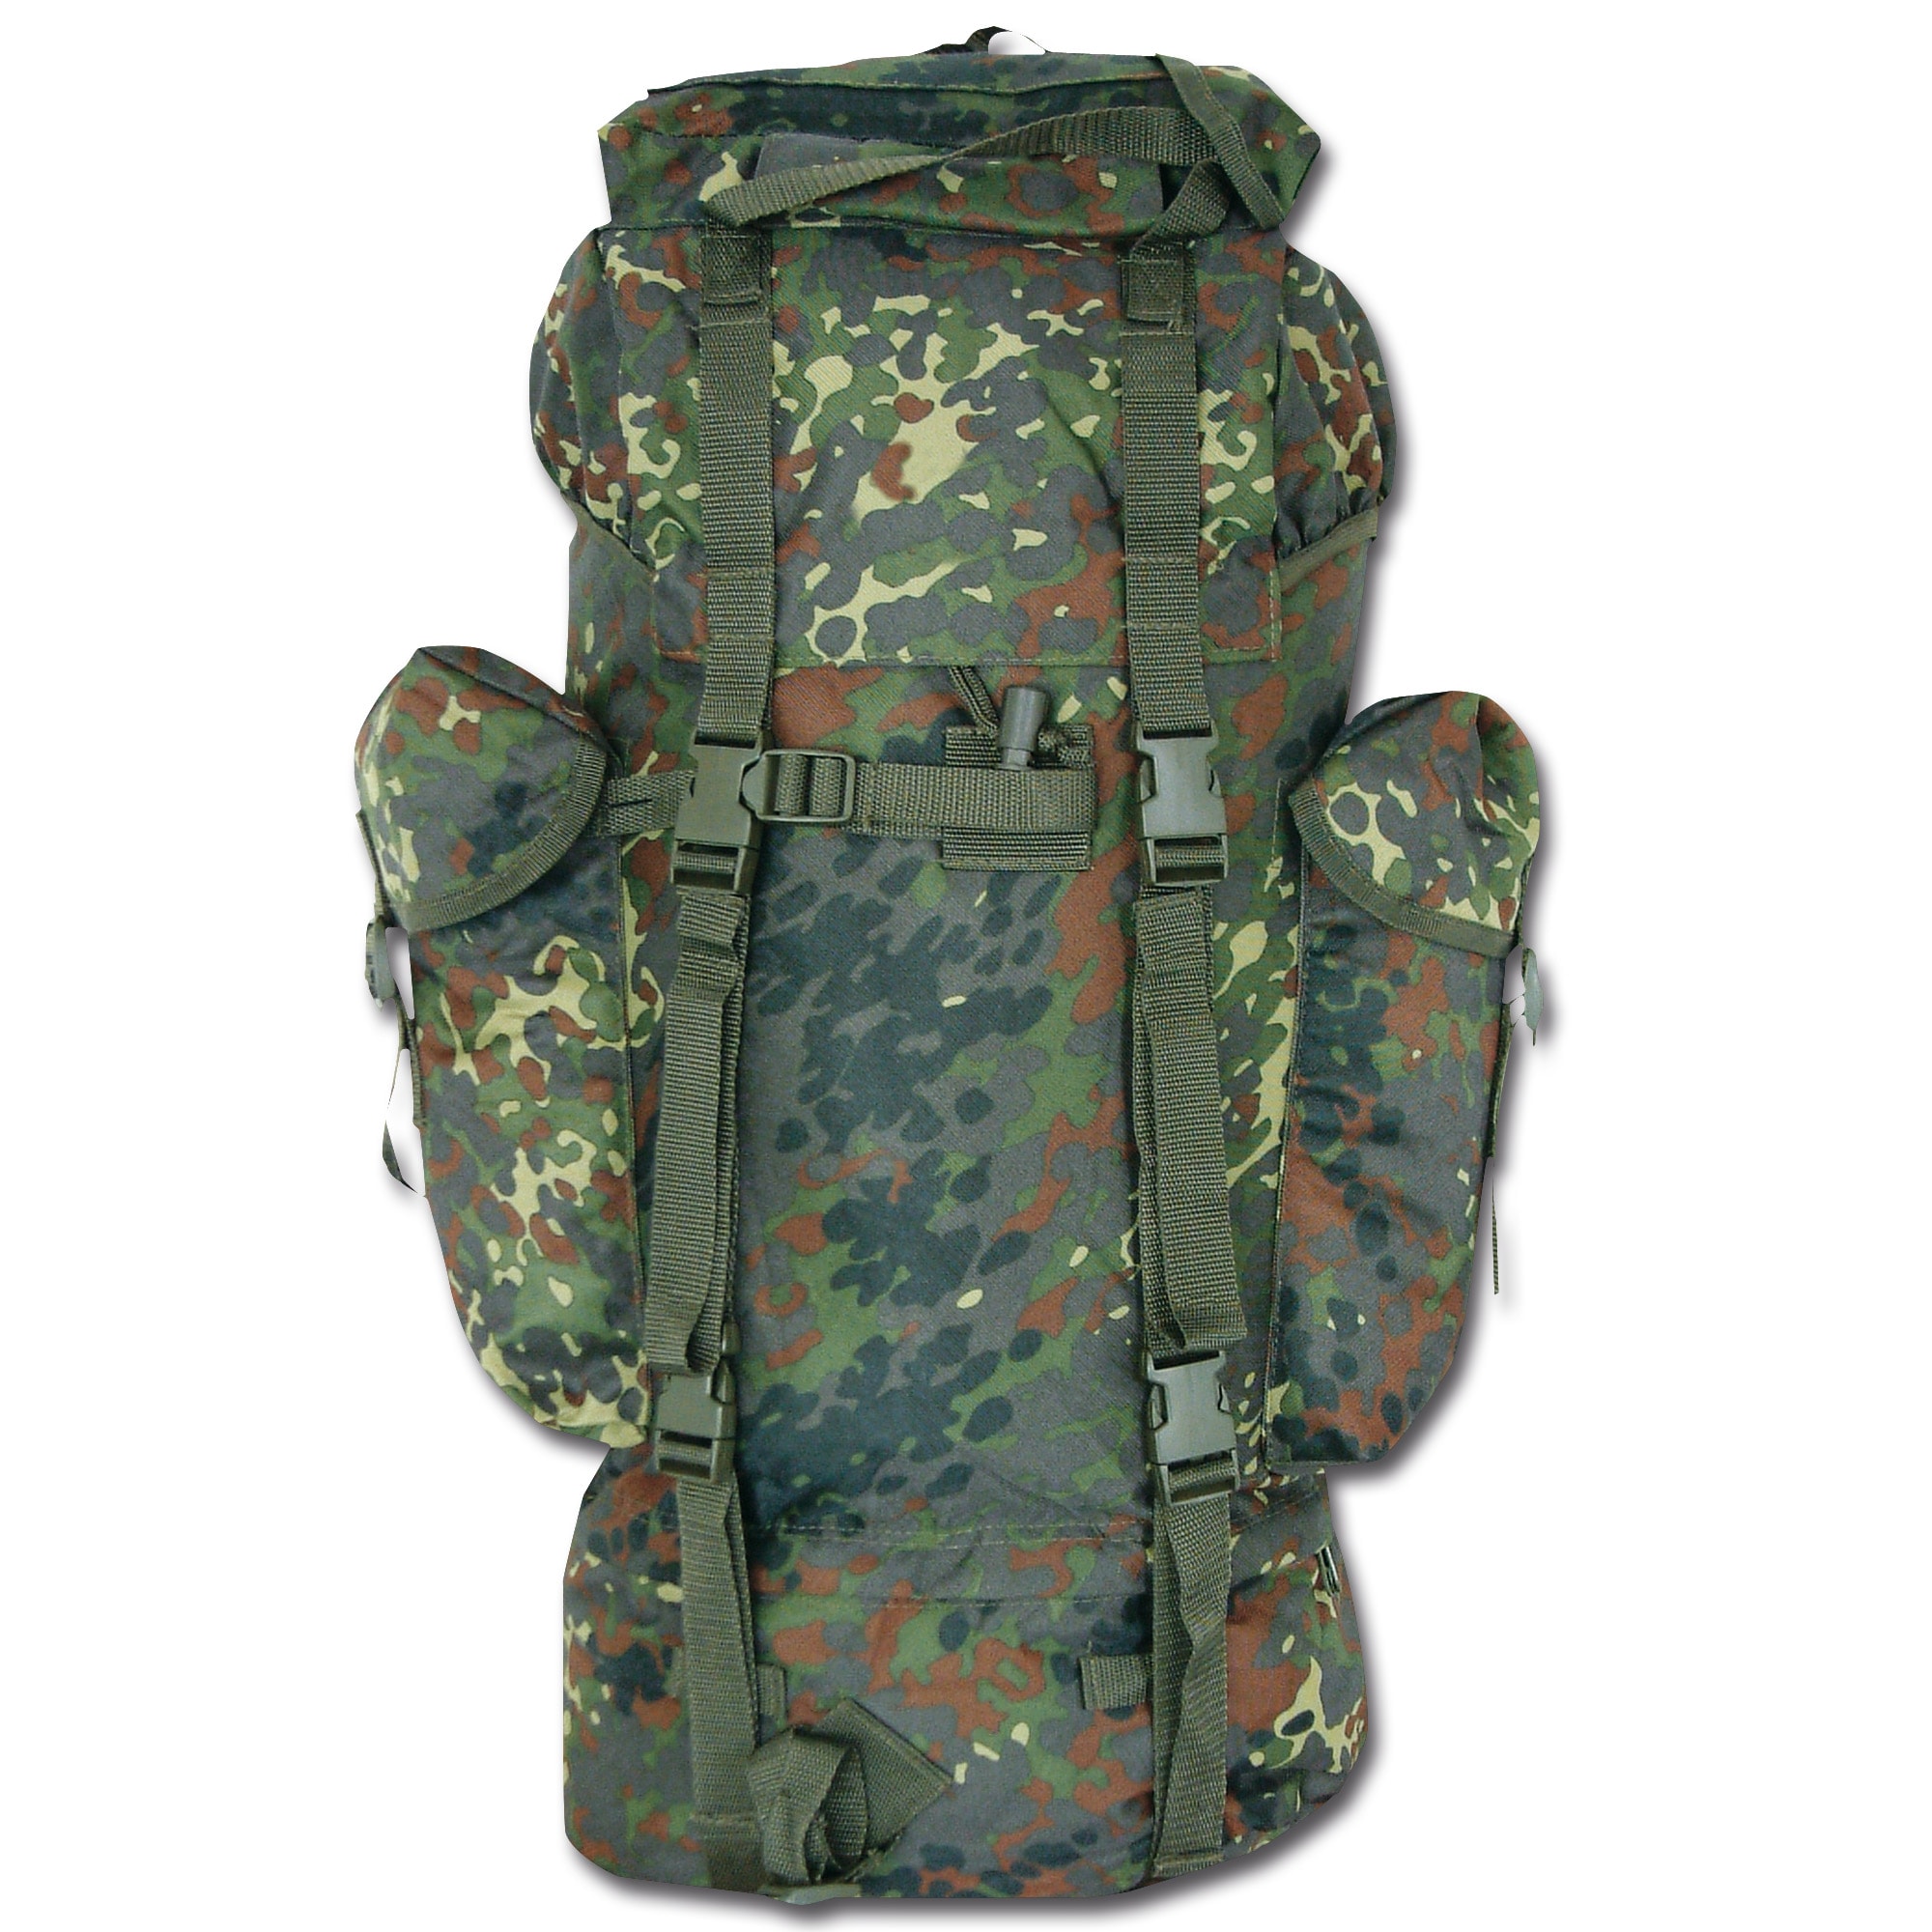 German Army Backpack Imported flecktarn | German Army Backpack Imported ...